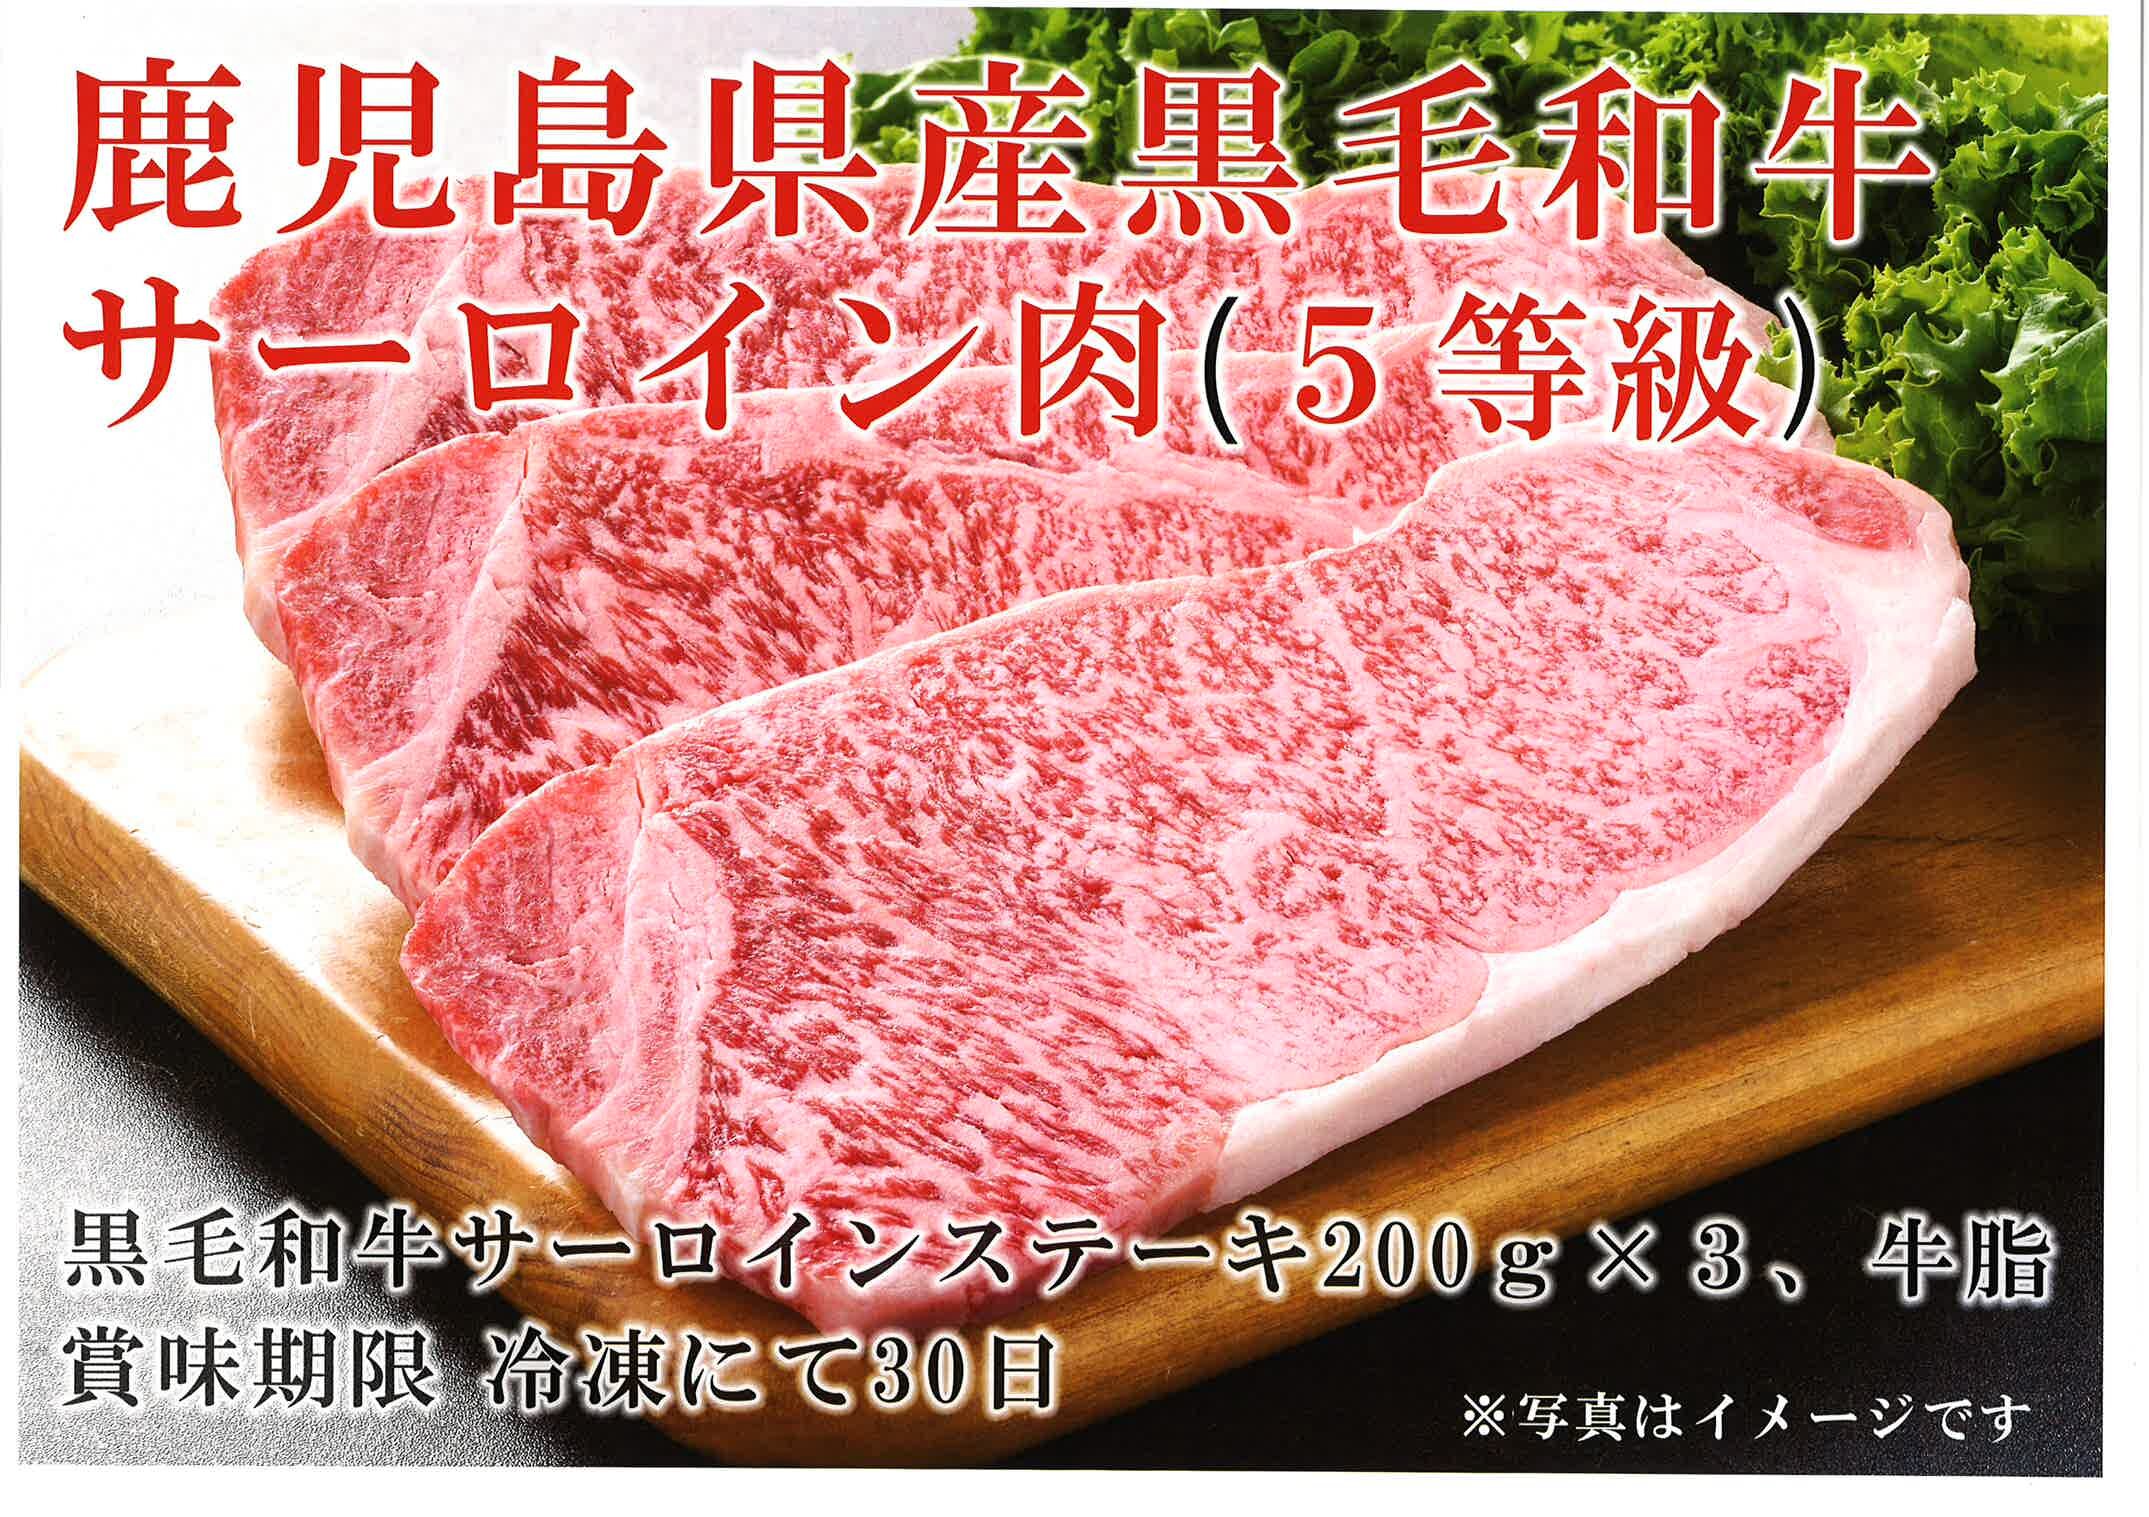 일본산 흑소 설로인 스테이크(산지 직송 상품) 